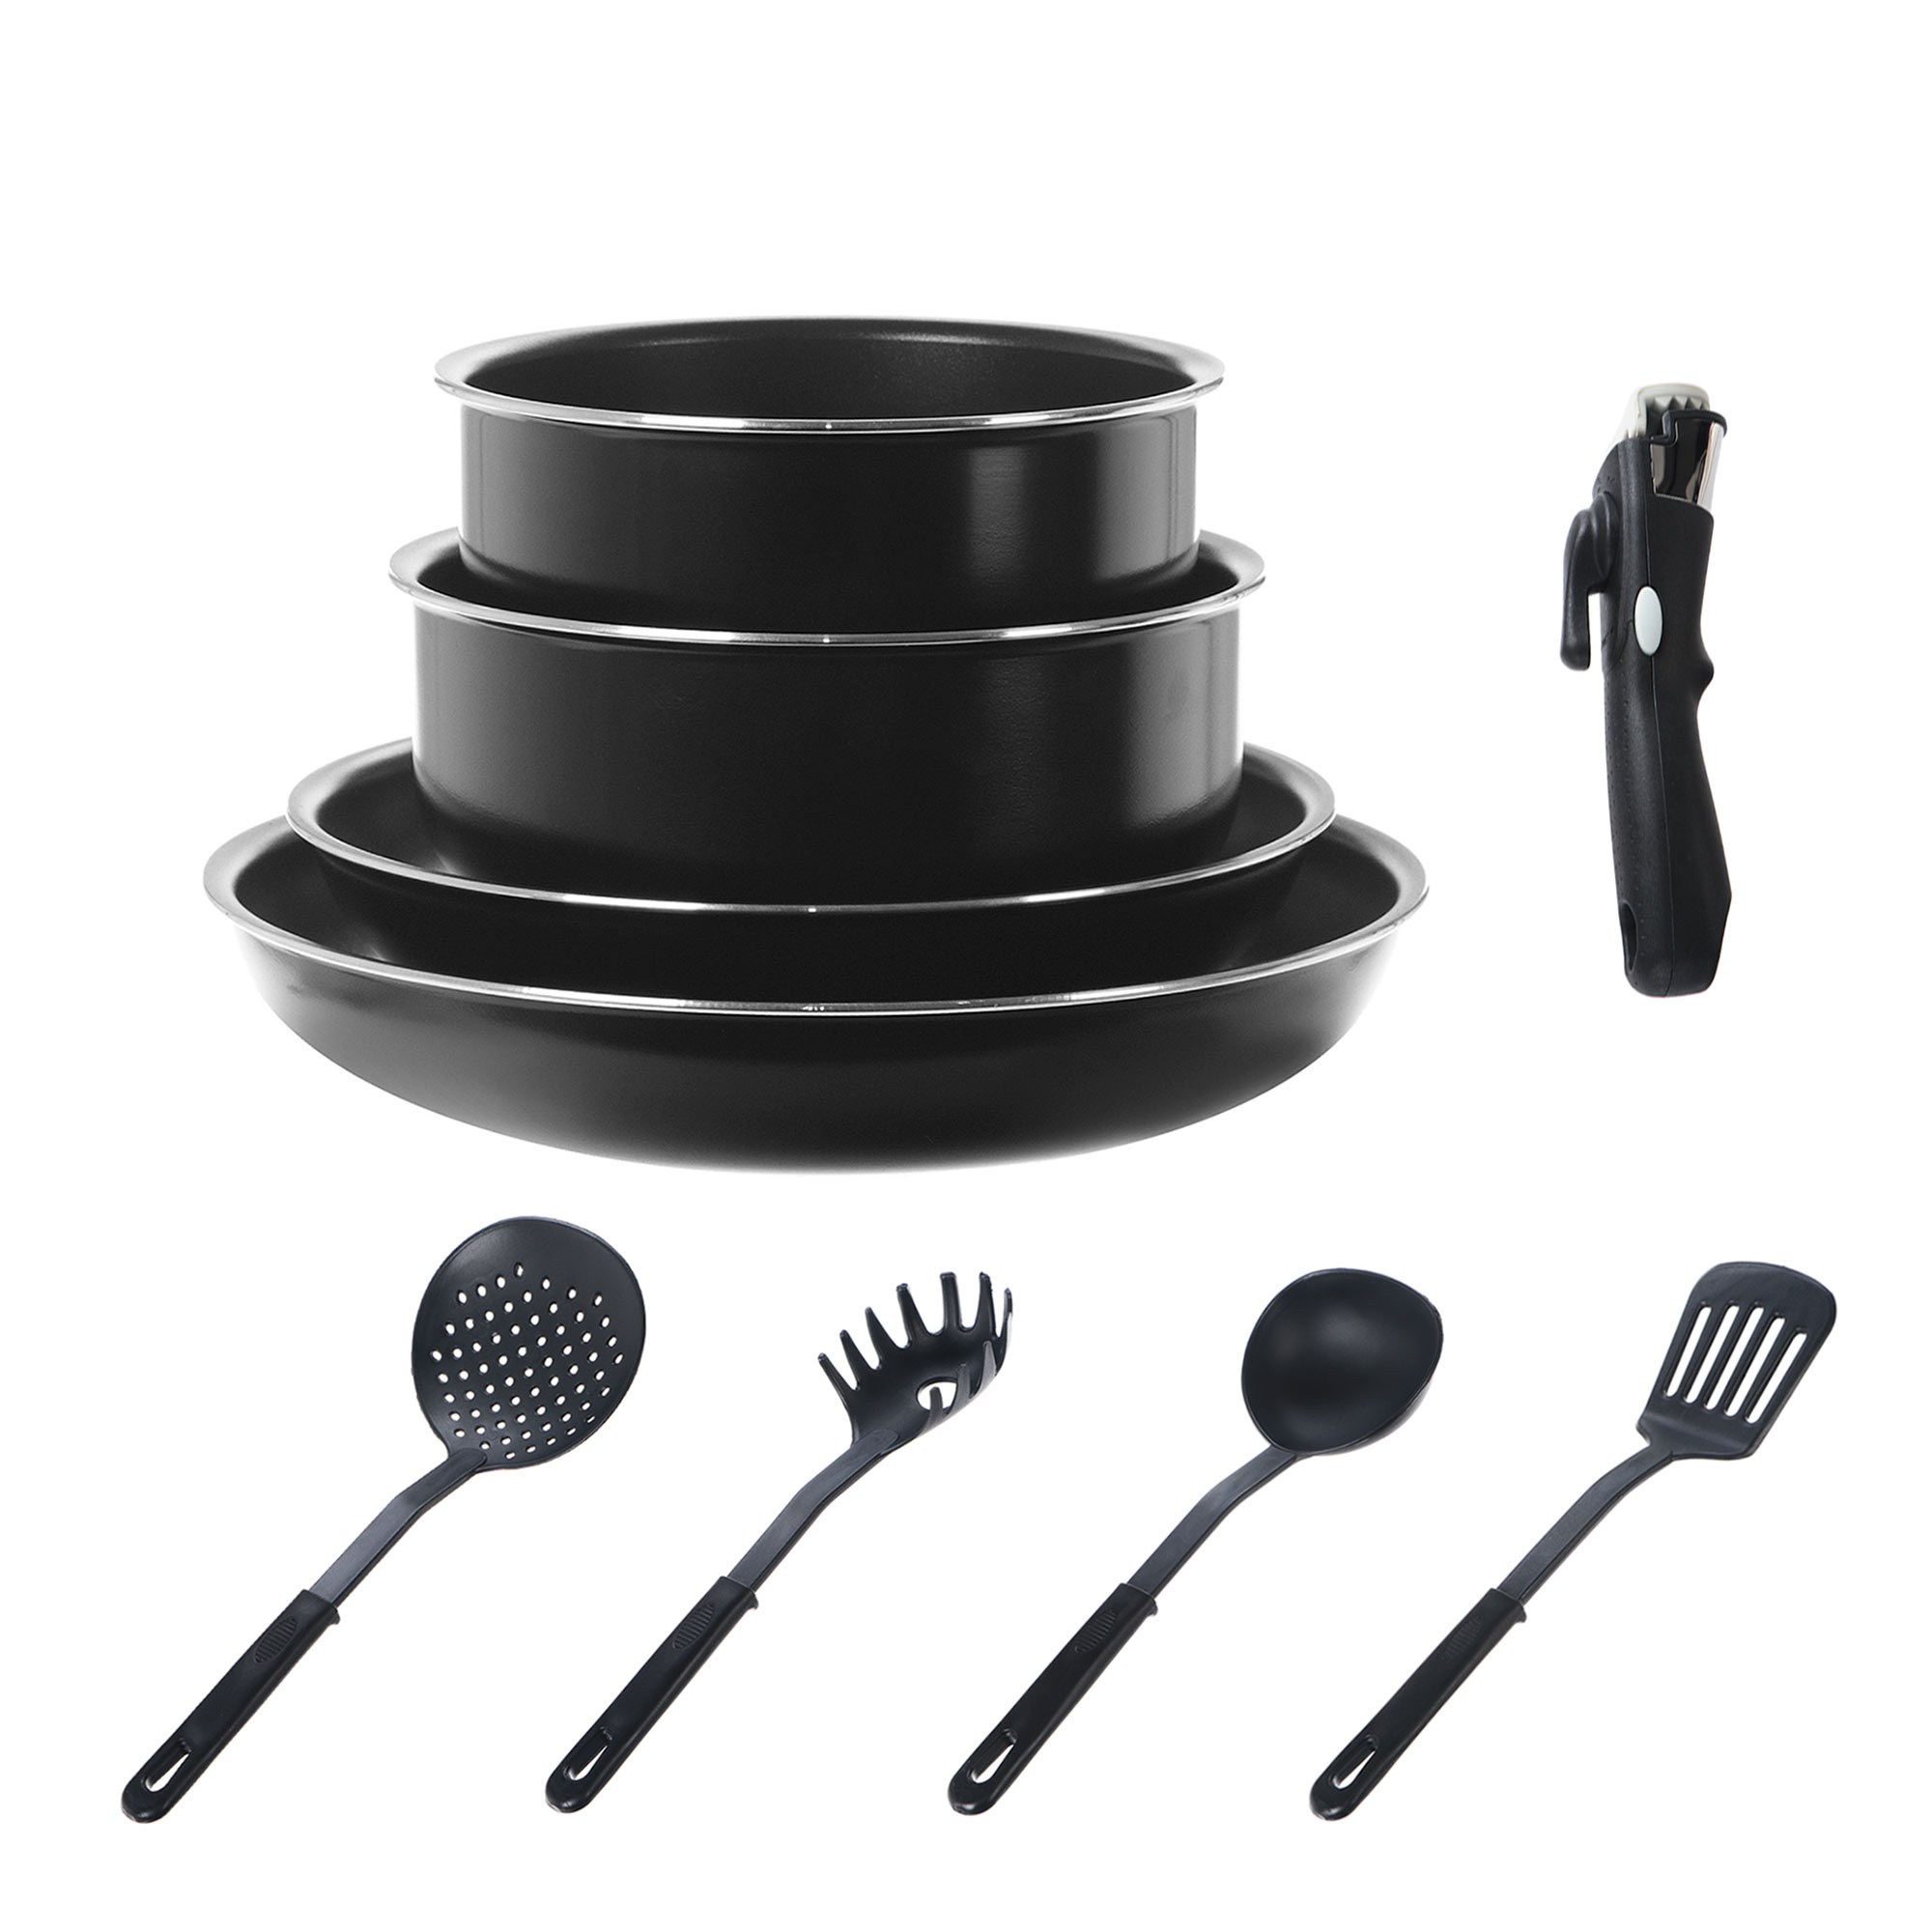 Набор посуды Kitchen star 10 предметов, цвет черный